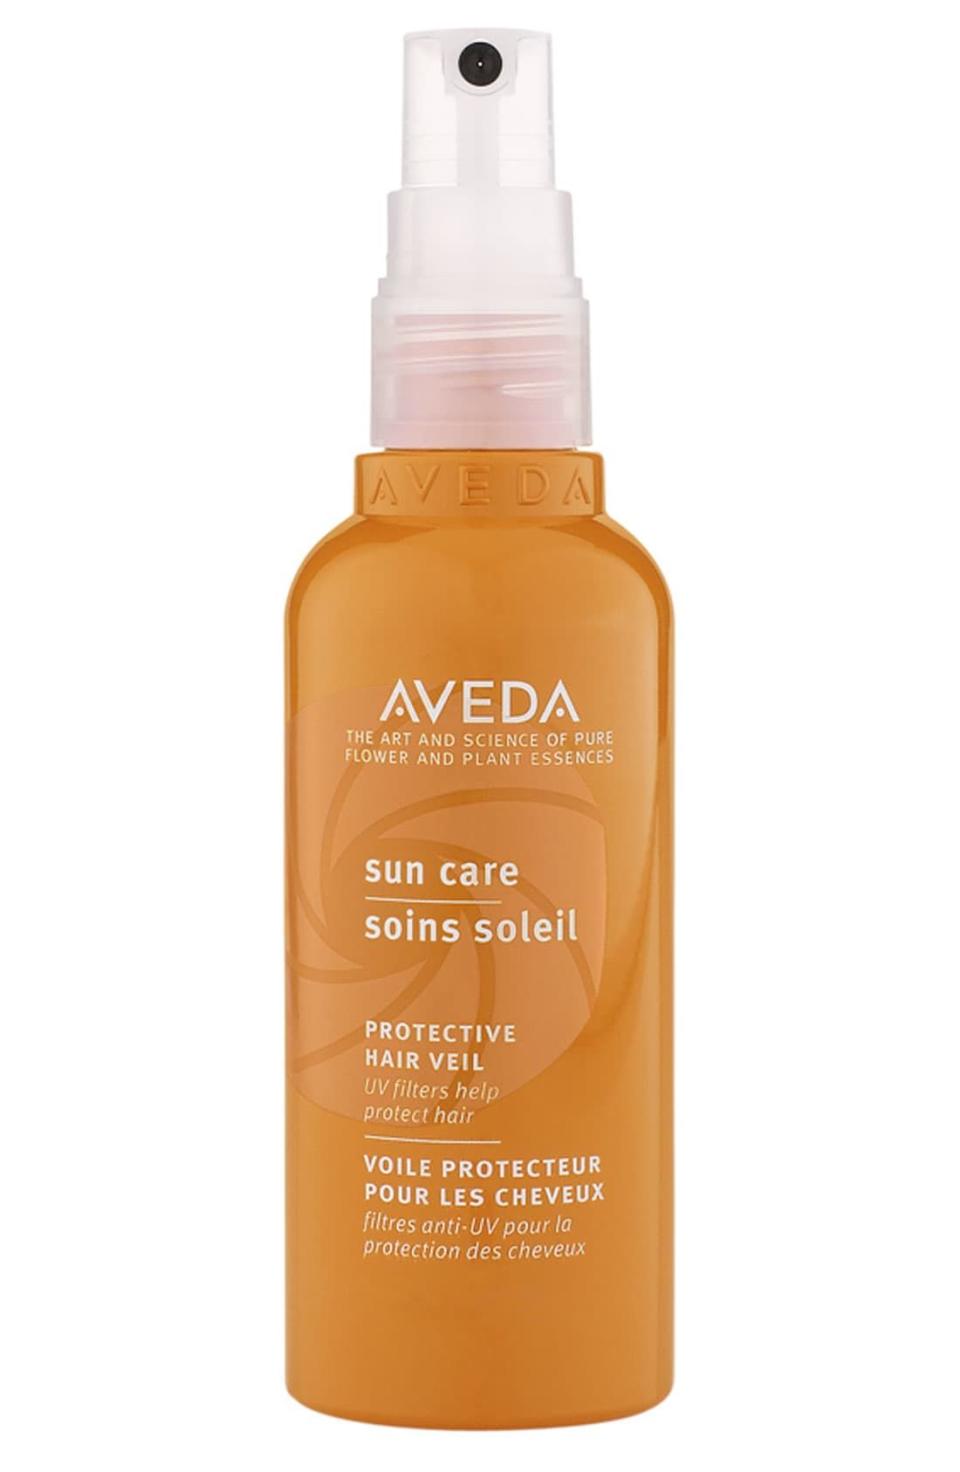 3) Sun Care Protective Hair Veil